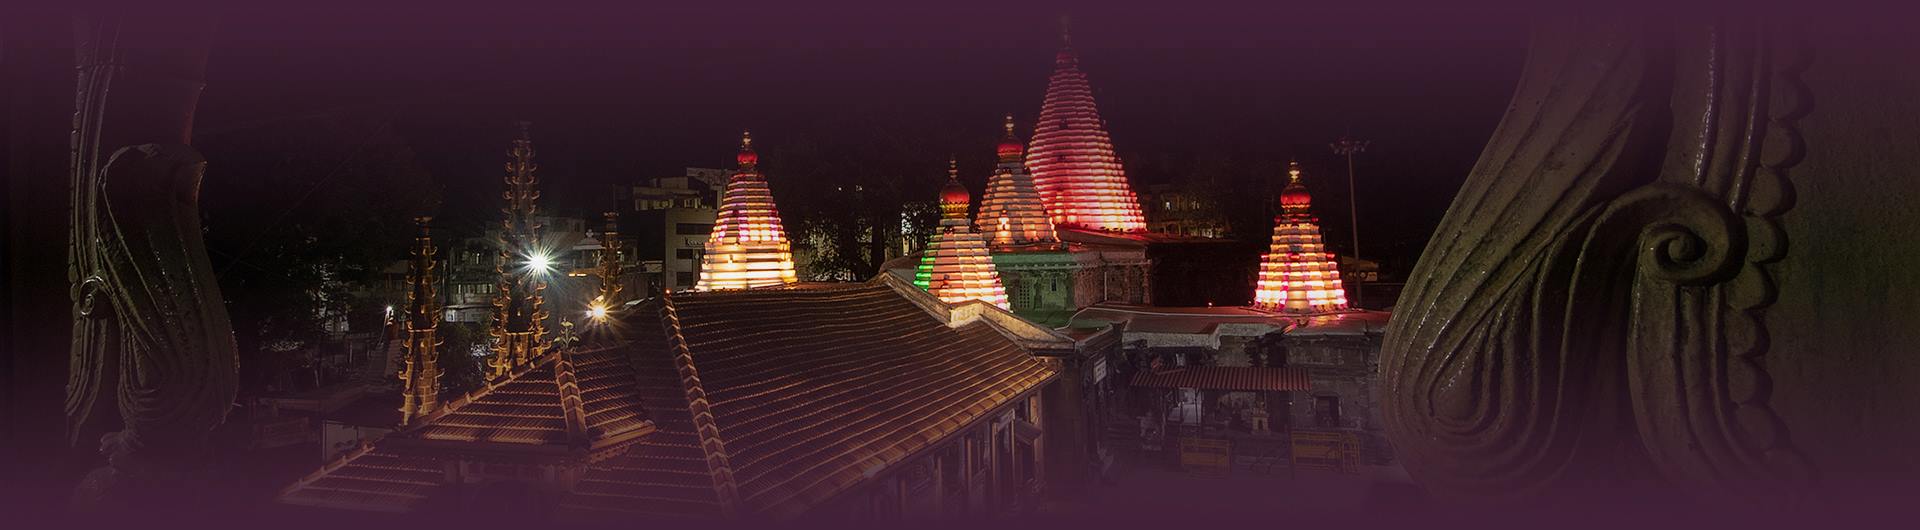 Kolhapur - Sri Mahalakshmi Temple